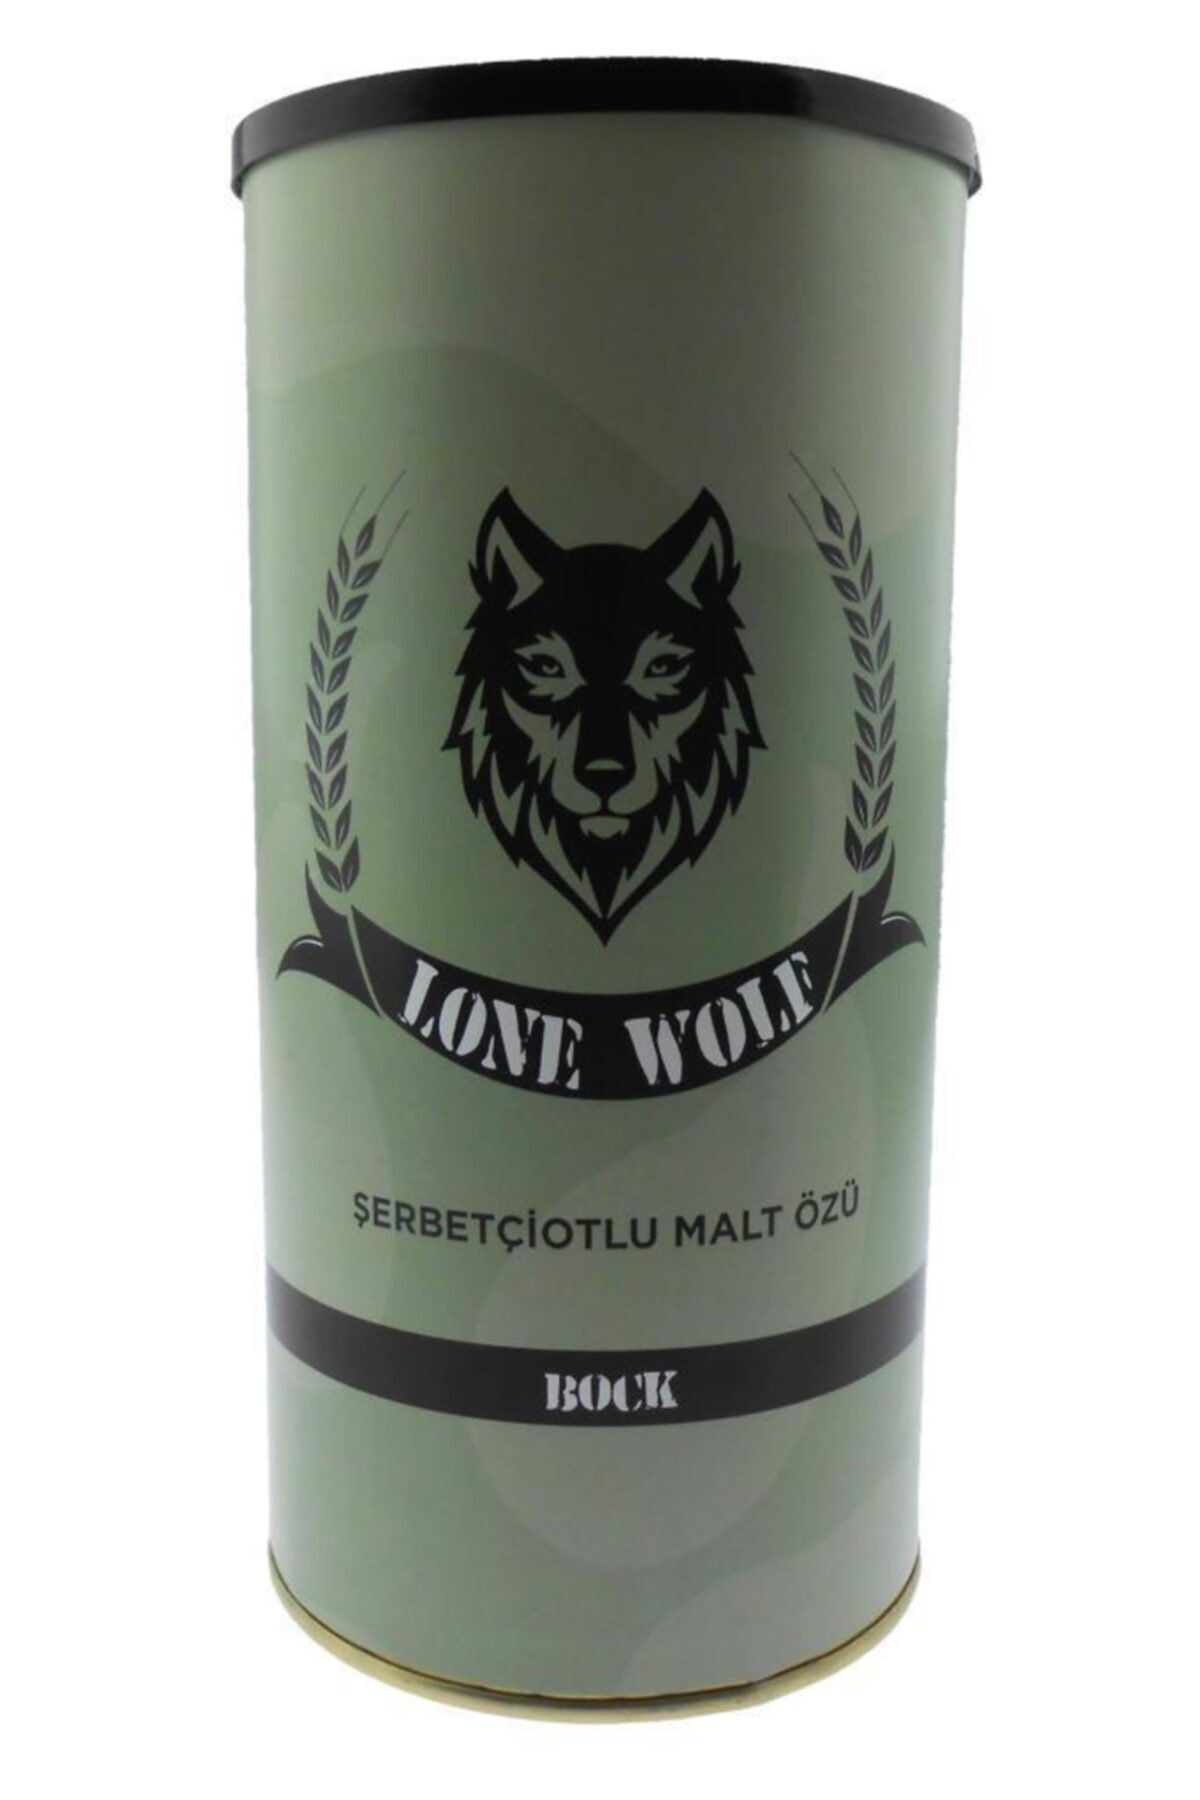 Vinomarket Lone Wolf - Bock - Şerbetçiotlu Malt Özü